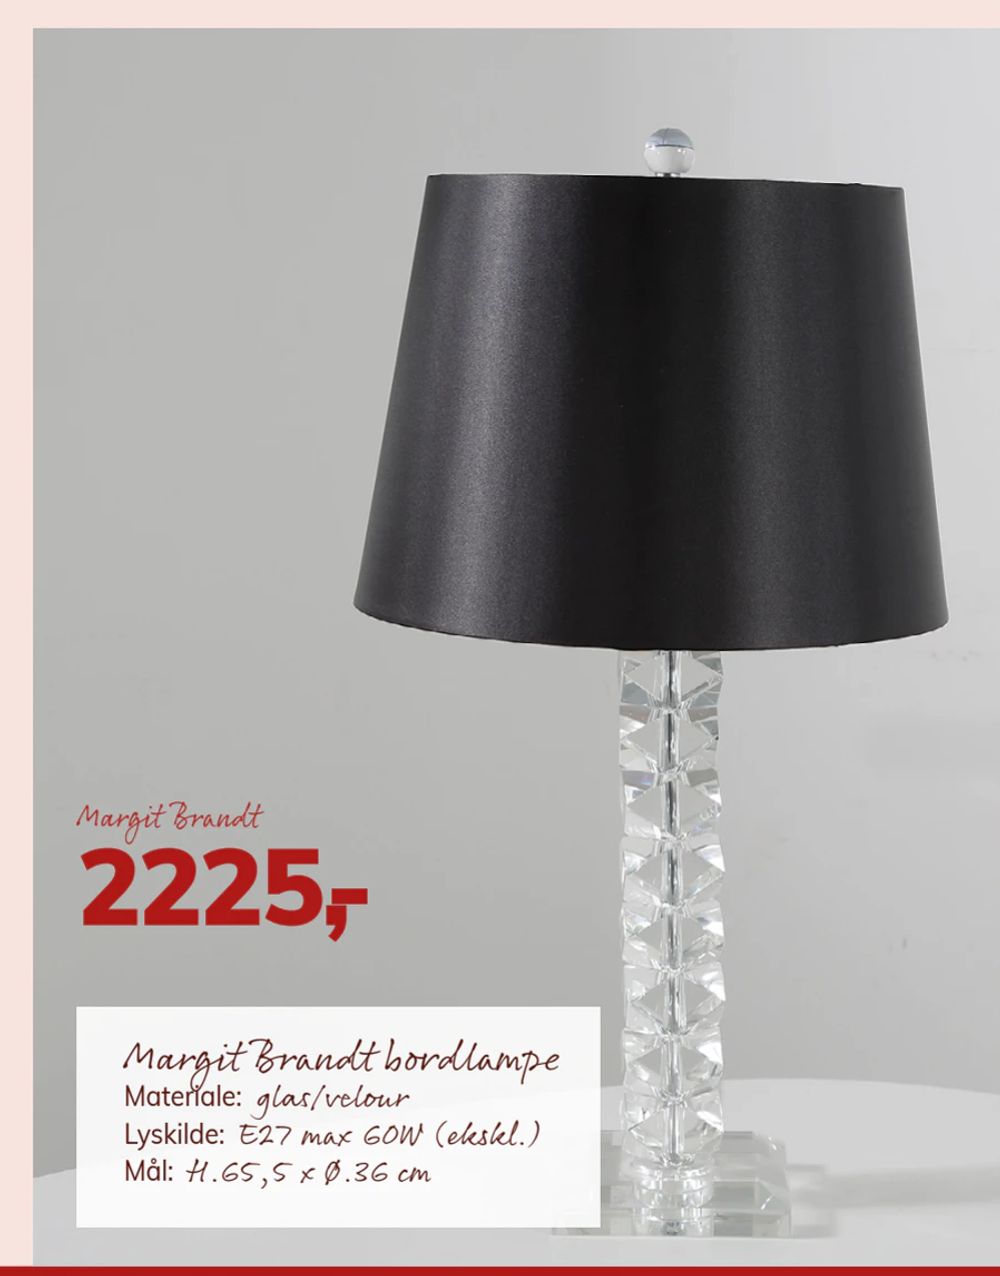 Tilbud på Margit Brandt bordlampe fra Daells Bolighus til 2.225 kr.